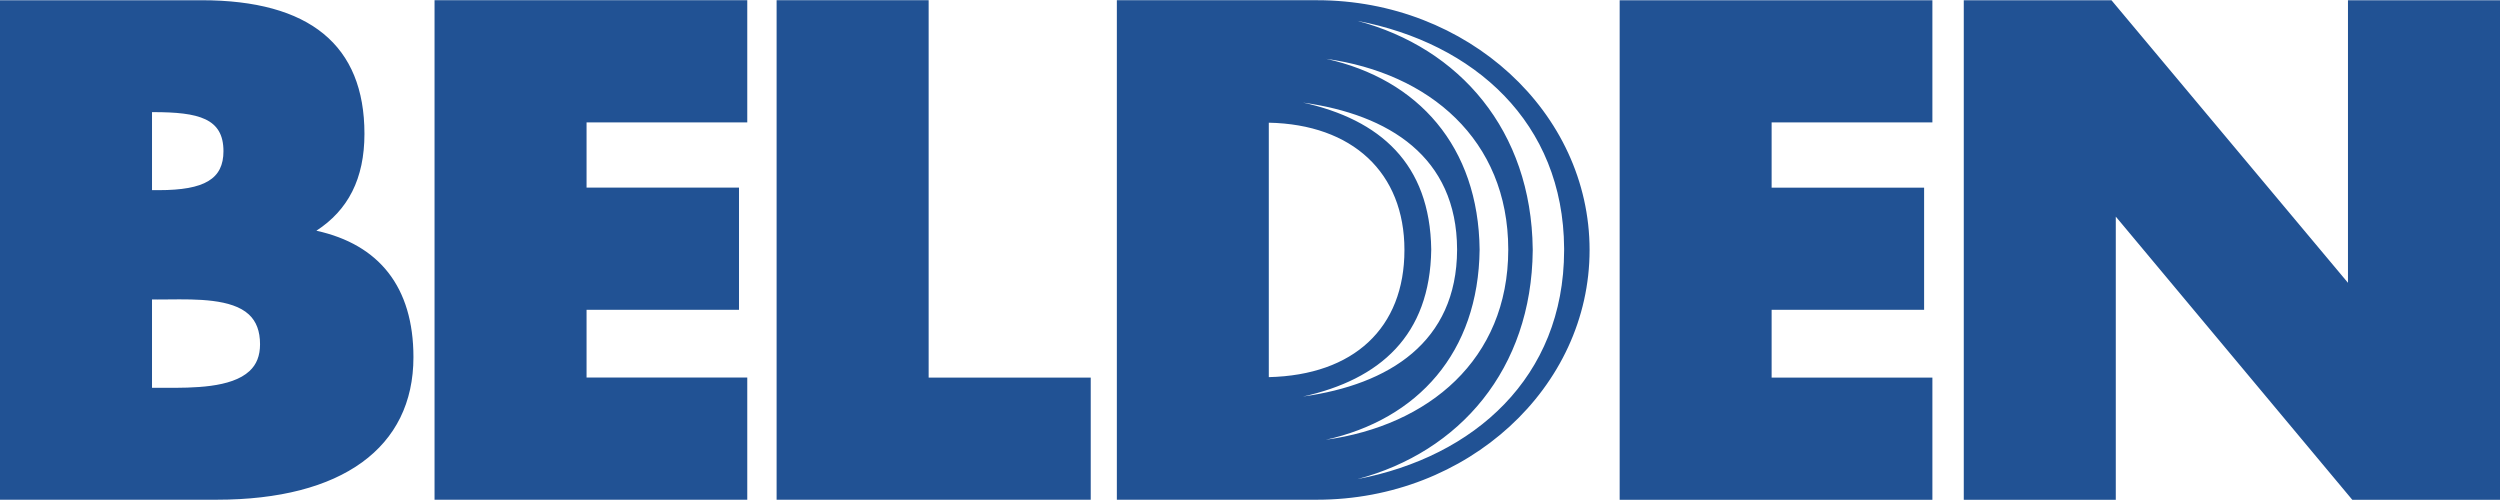 belden-logo-vector